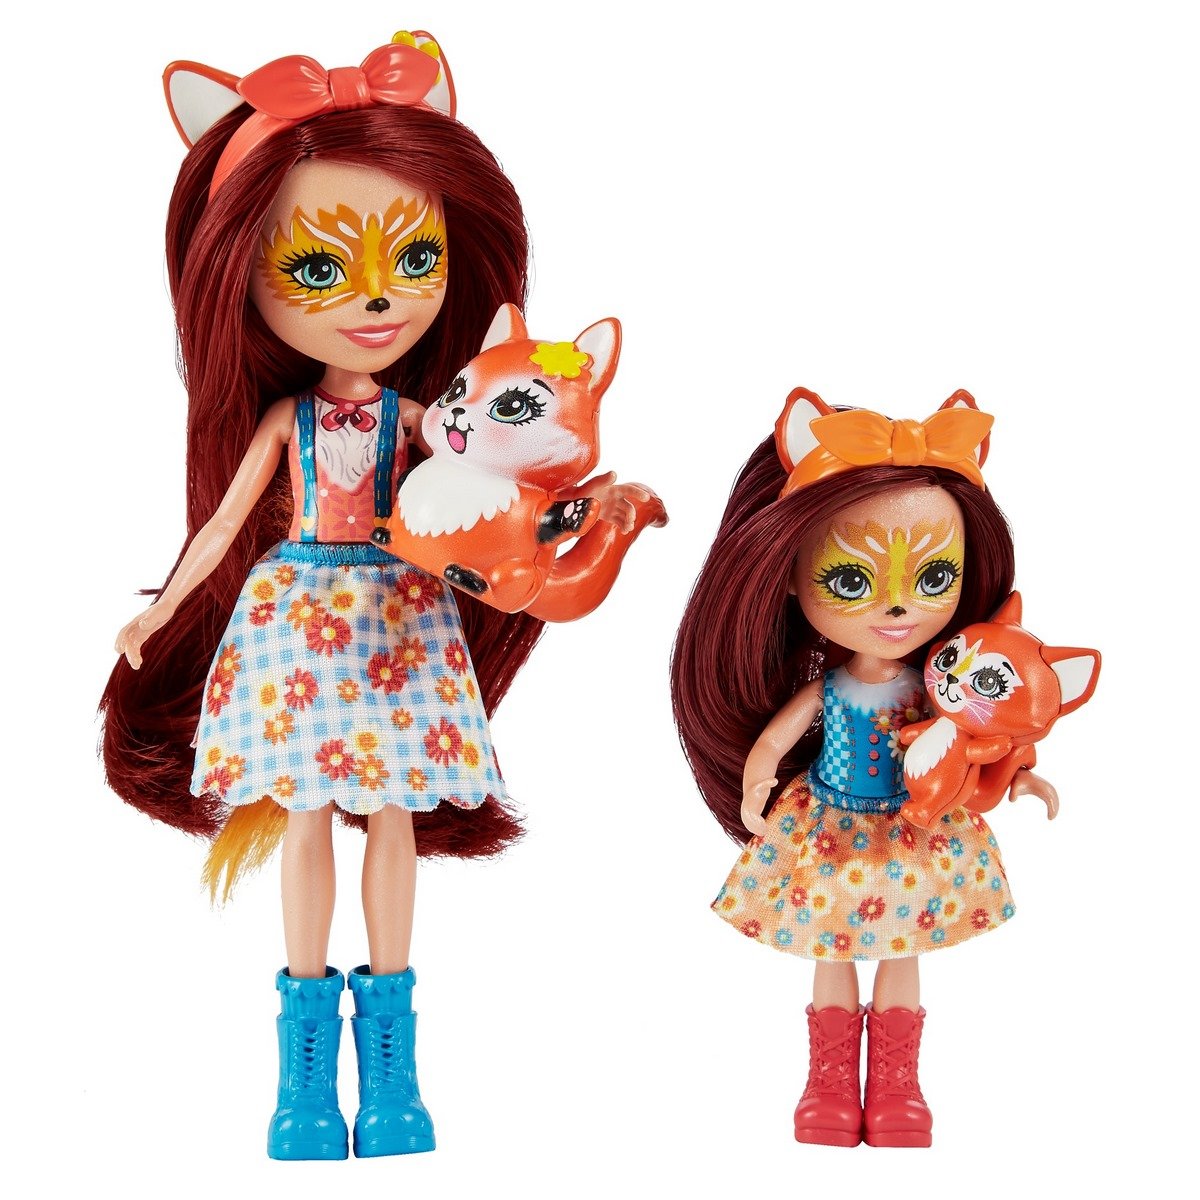 Enchantimals Mini-poupée Felicity Renard et Figurine Animale Flick, brune  avec jupe à motifs en tissu, jouet enfant, DVH89